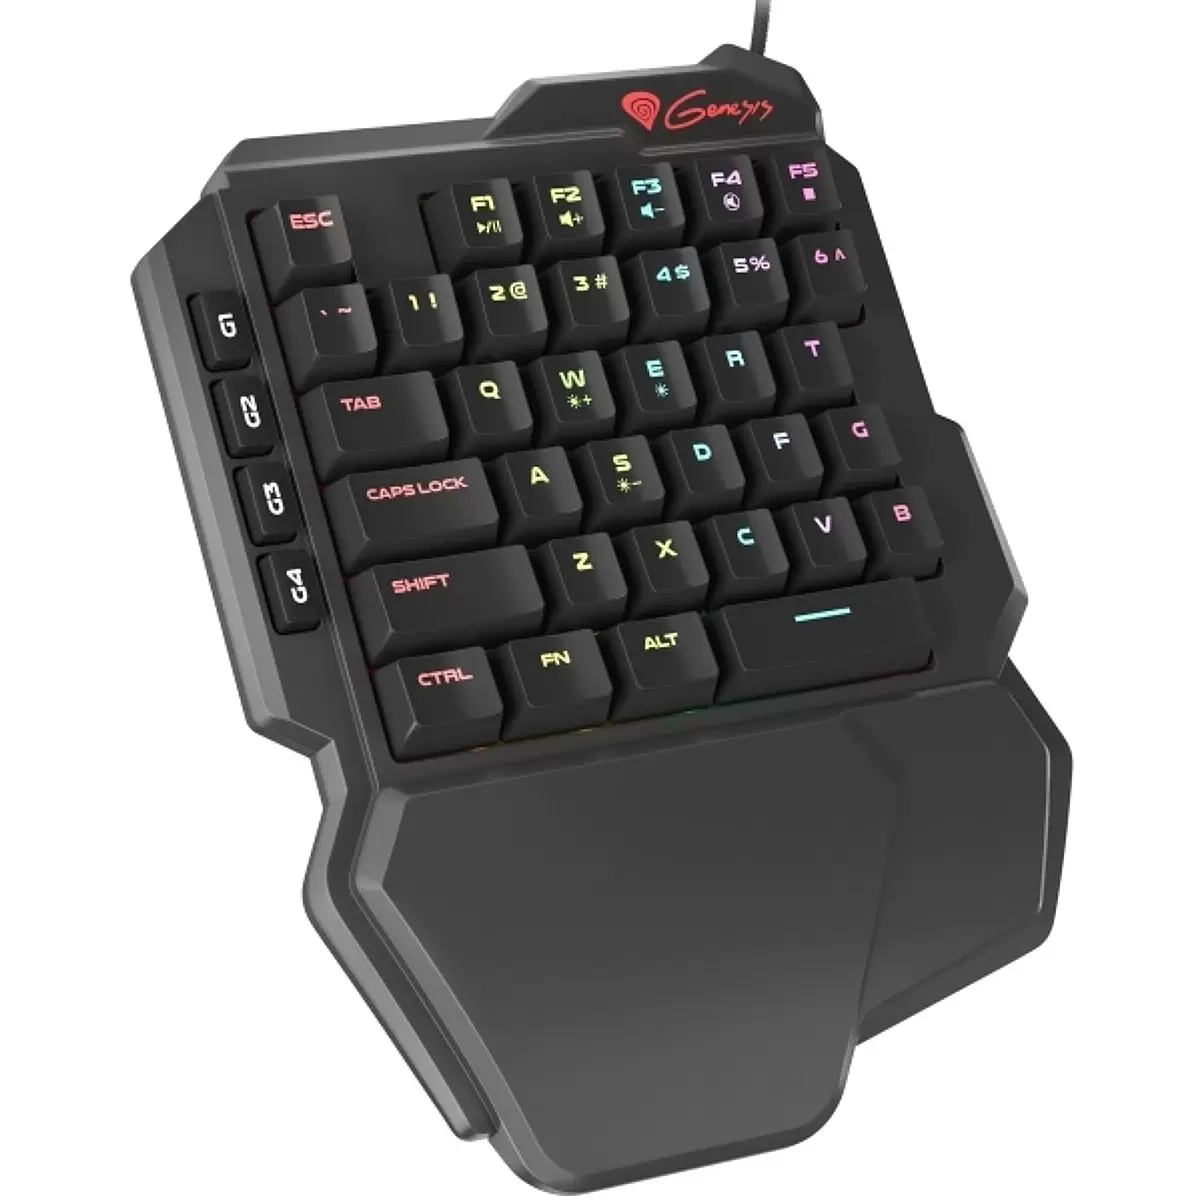 NATEC Genesis gaming keyboard Thor 100